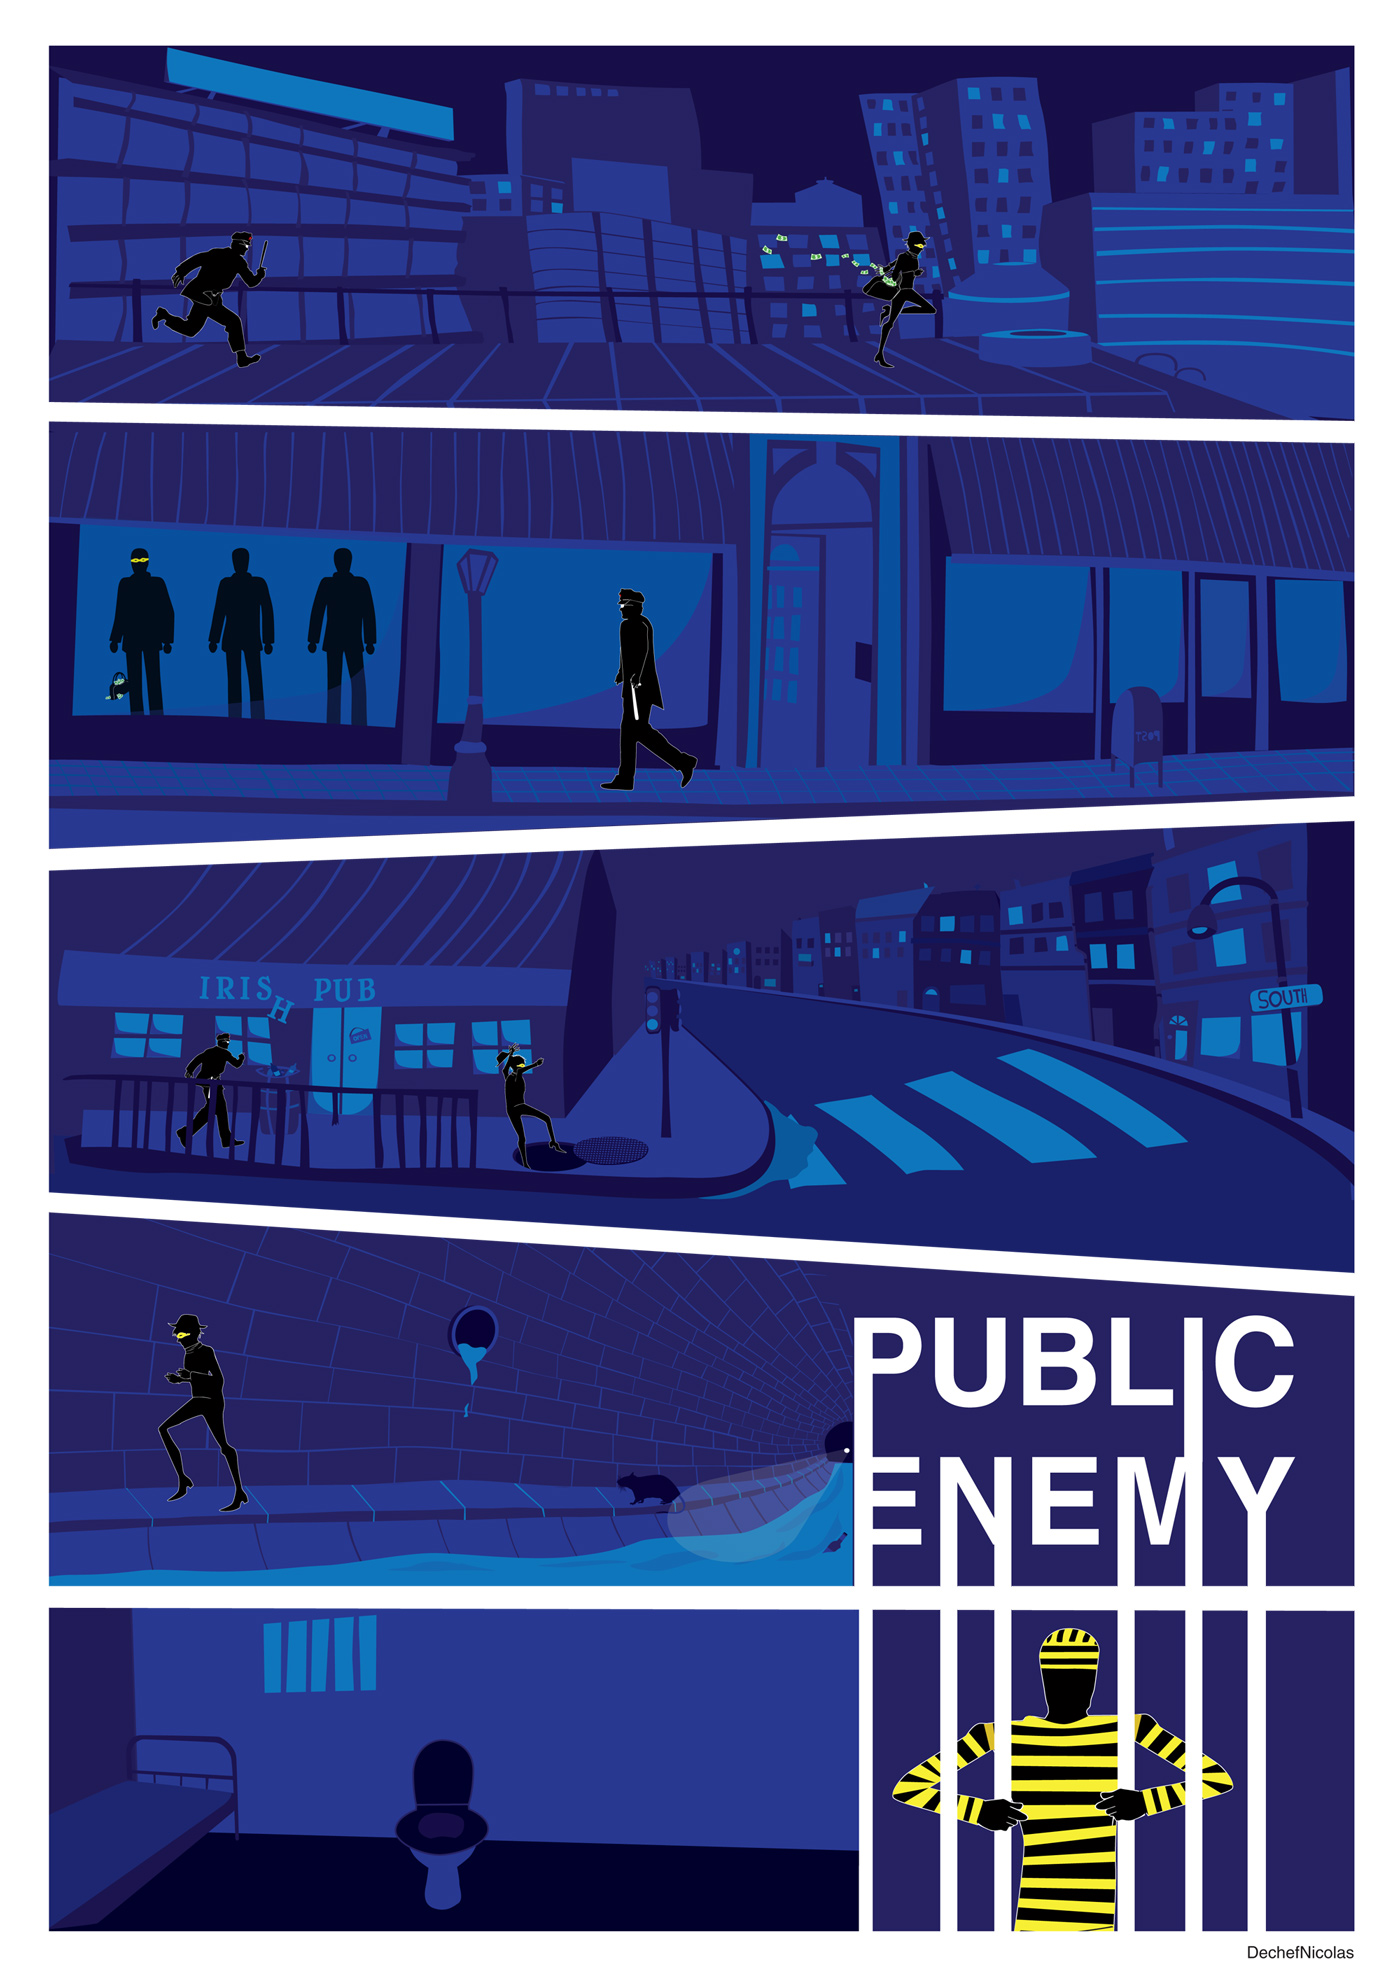 Planche illustration vectorielle sur le thème de "Public Enemy", nicolas dechef, Infographiste et photographe à Charleroi et Namur